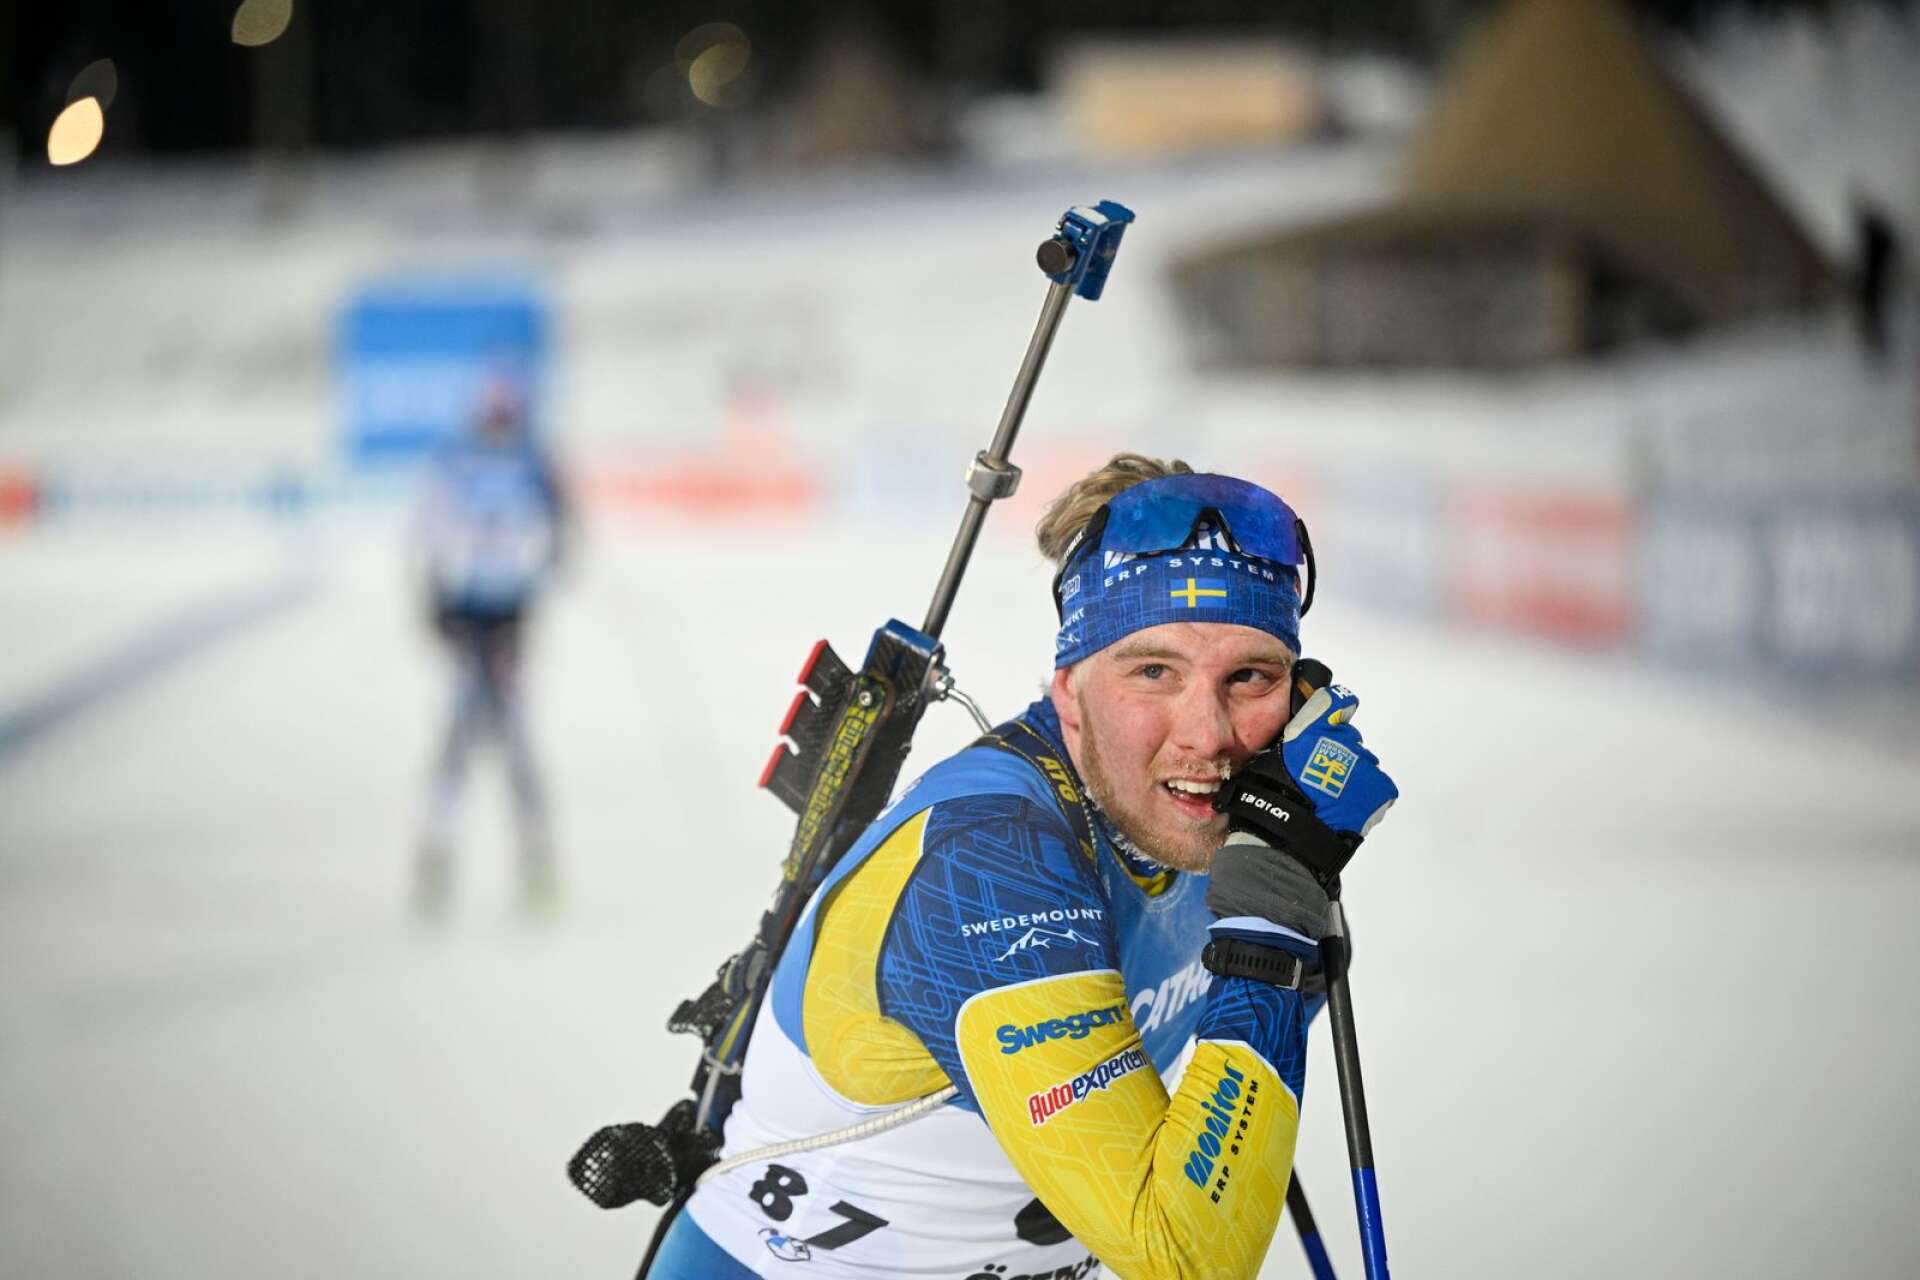 Trött och nöjd. Viktor Brandt precis efter målgången i torsdagens distanslopp i världscupen i Östersund.